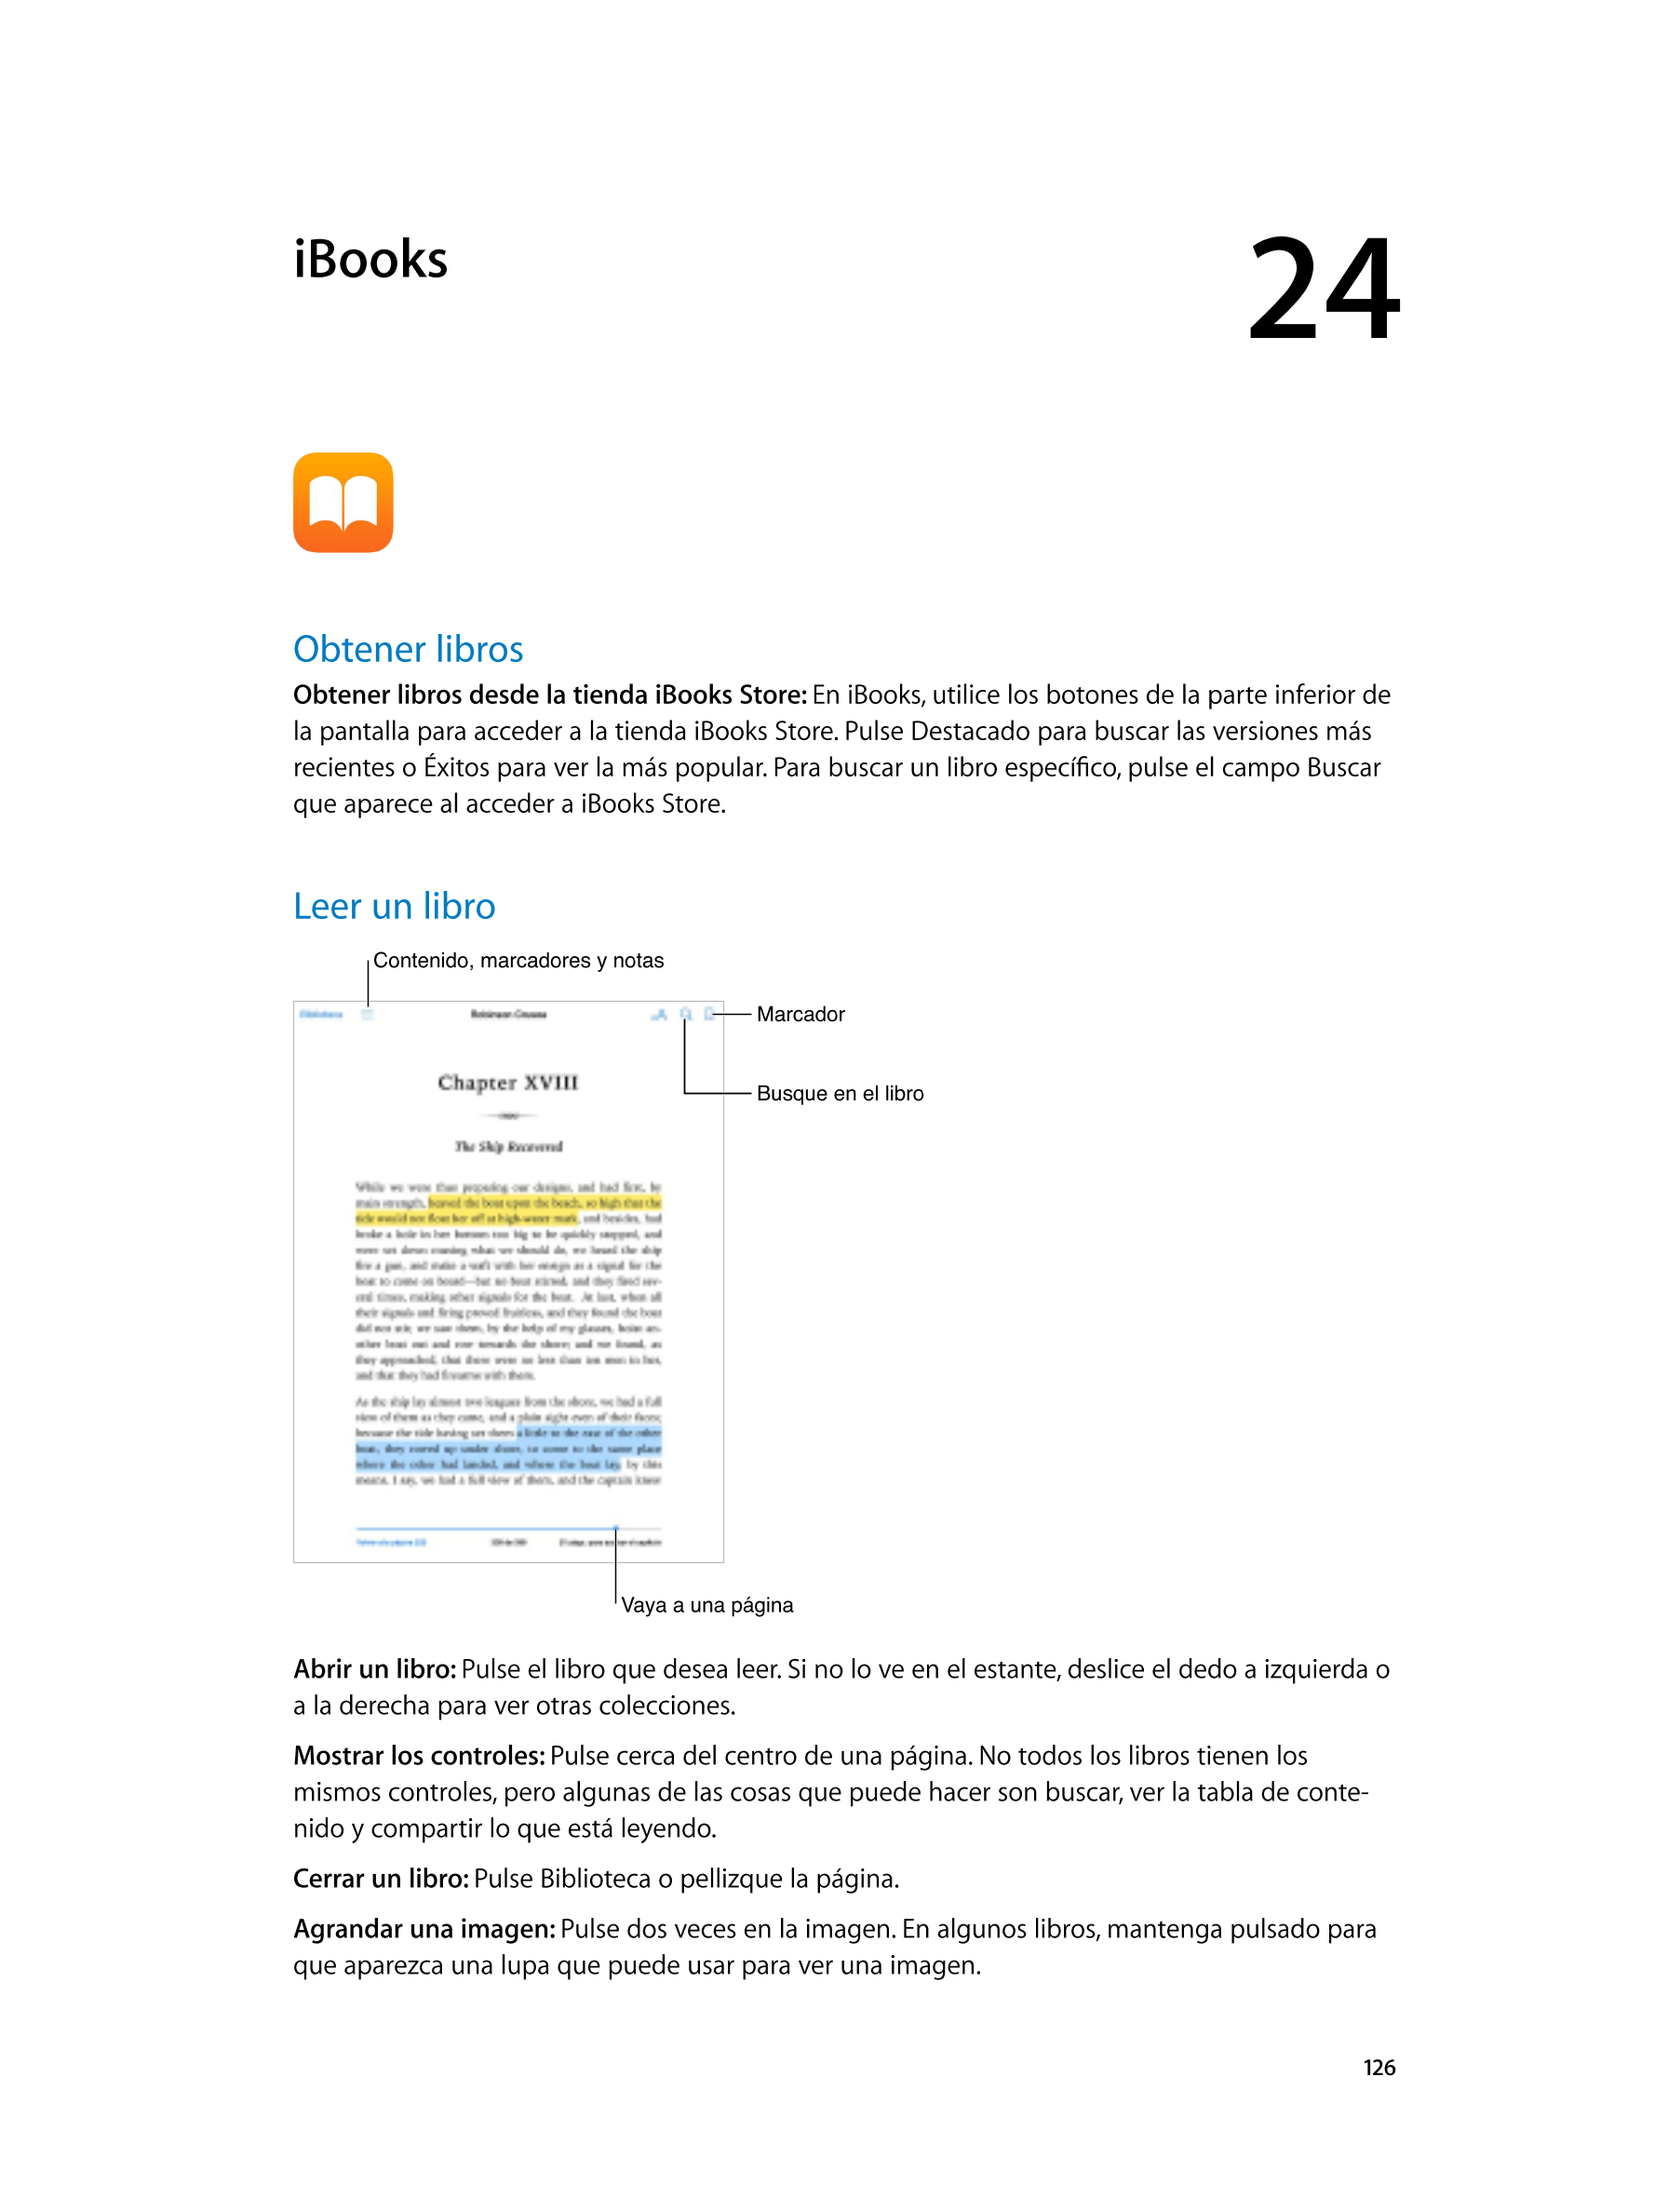  iBooks 24  
Obtener libros
Obtener libros desde la tienda iBooks Store:  En iBooks, utilice los botones de la parte inferior de